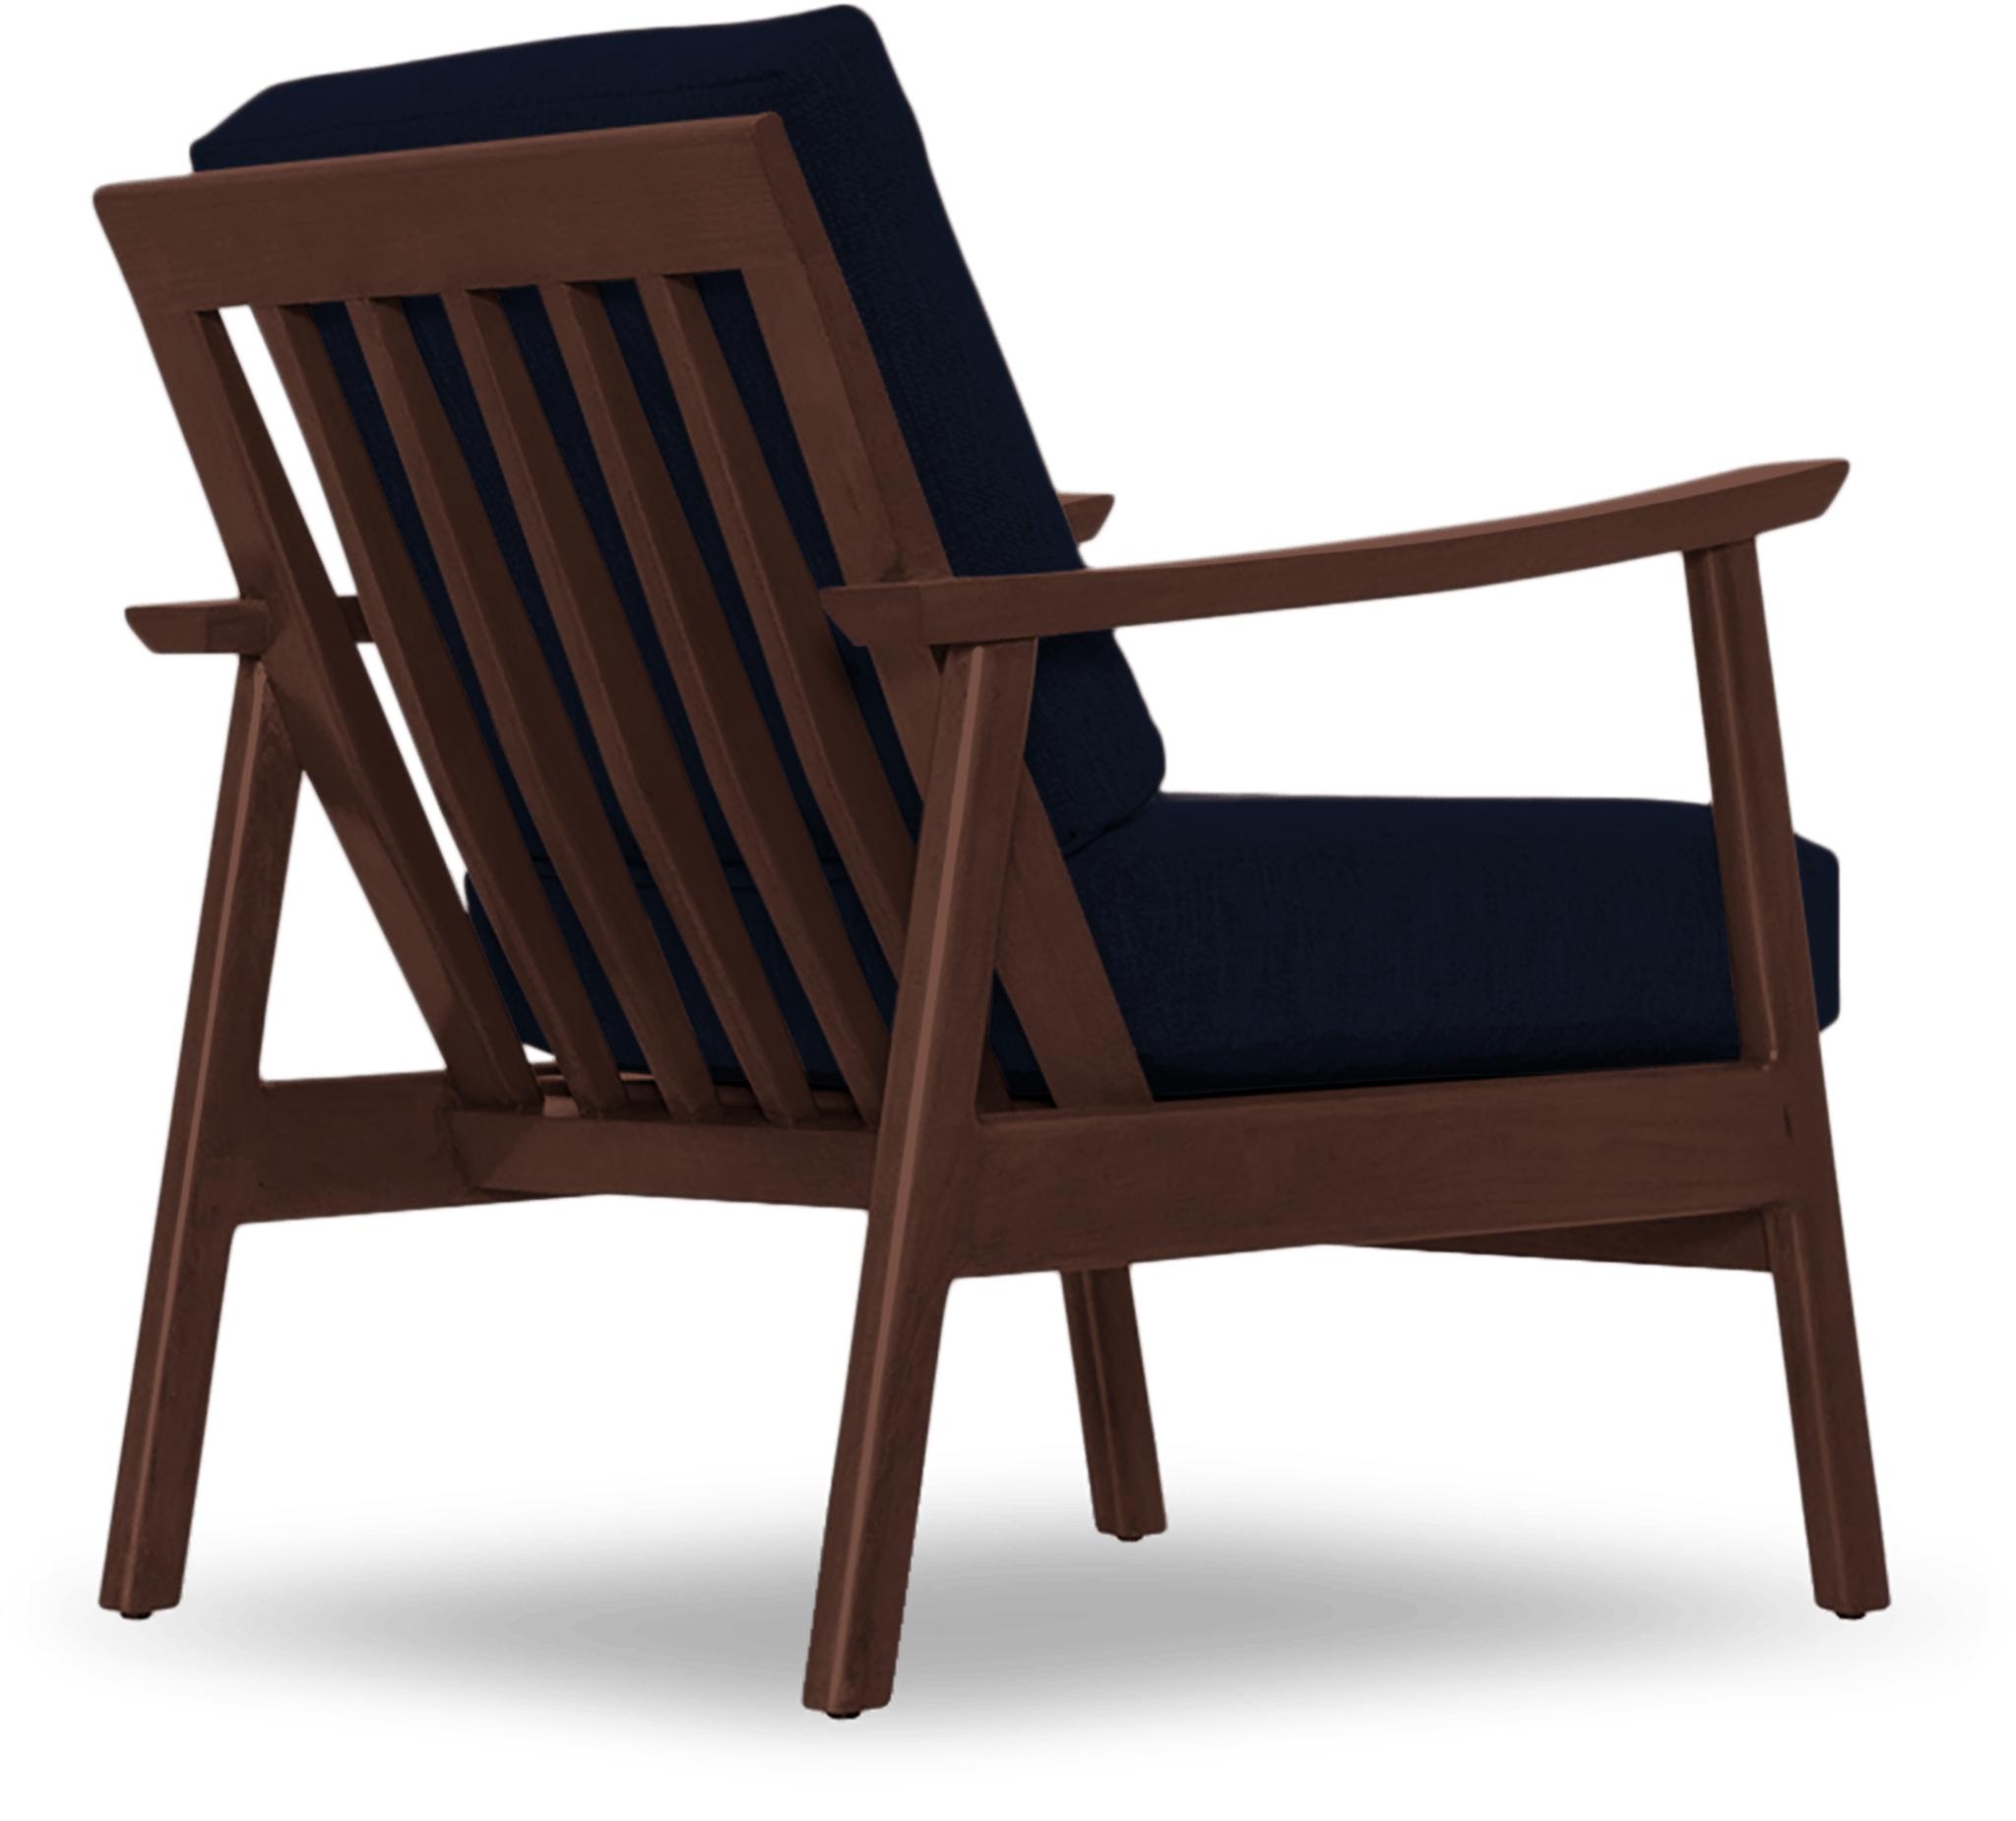 Blue Paley Mid Century Modern Chair - Bentley Indigo - Walnut - Image 3